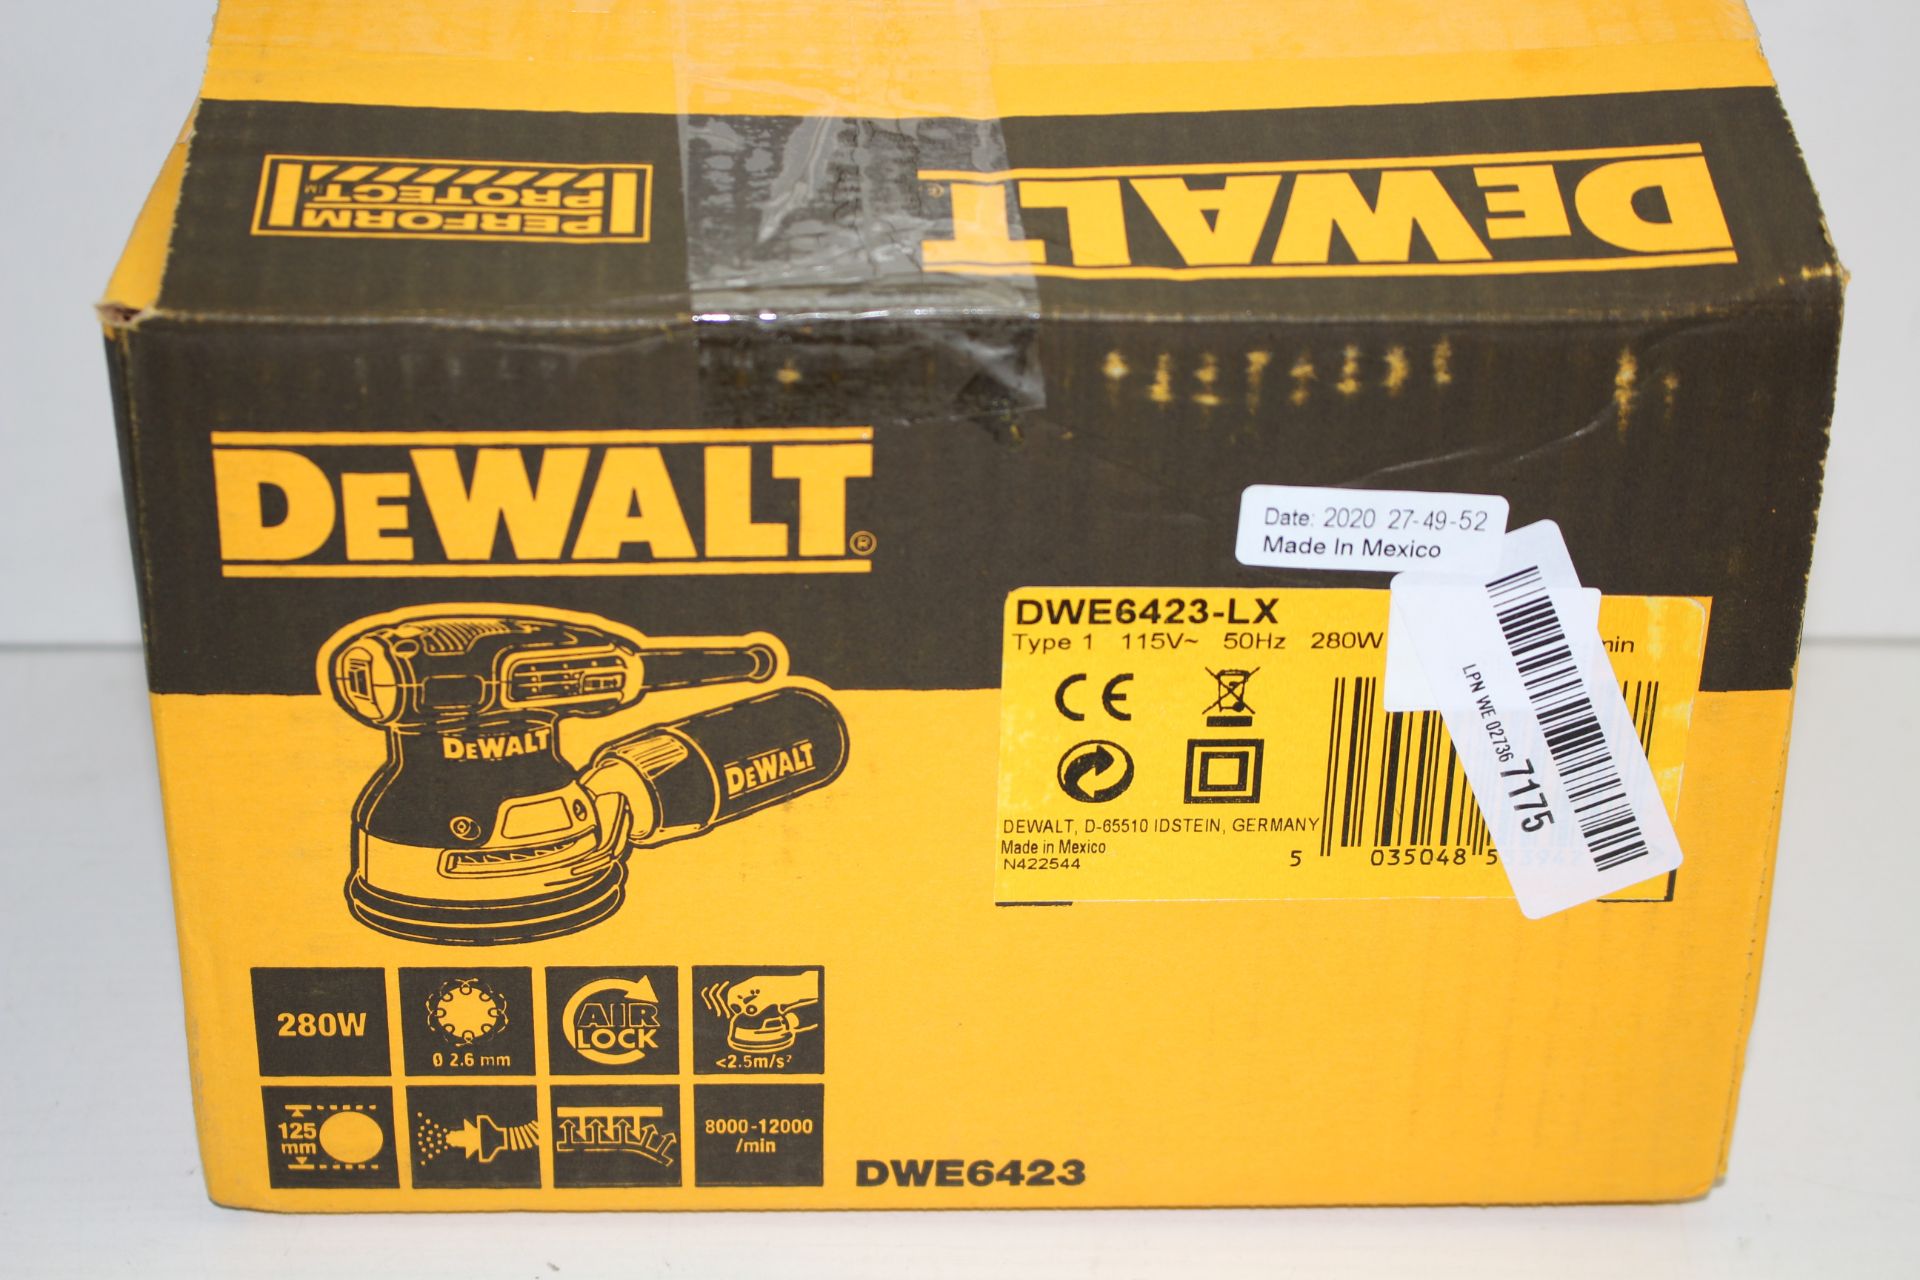 BOXED DEWALT PERFORM PROTECT DWE6423 125MM ORBITAL SANDER VARIABLE SPEED RRP £99.99Condition